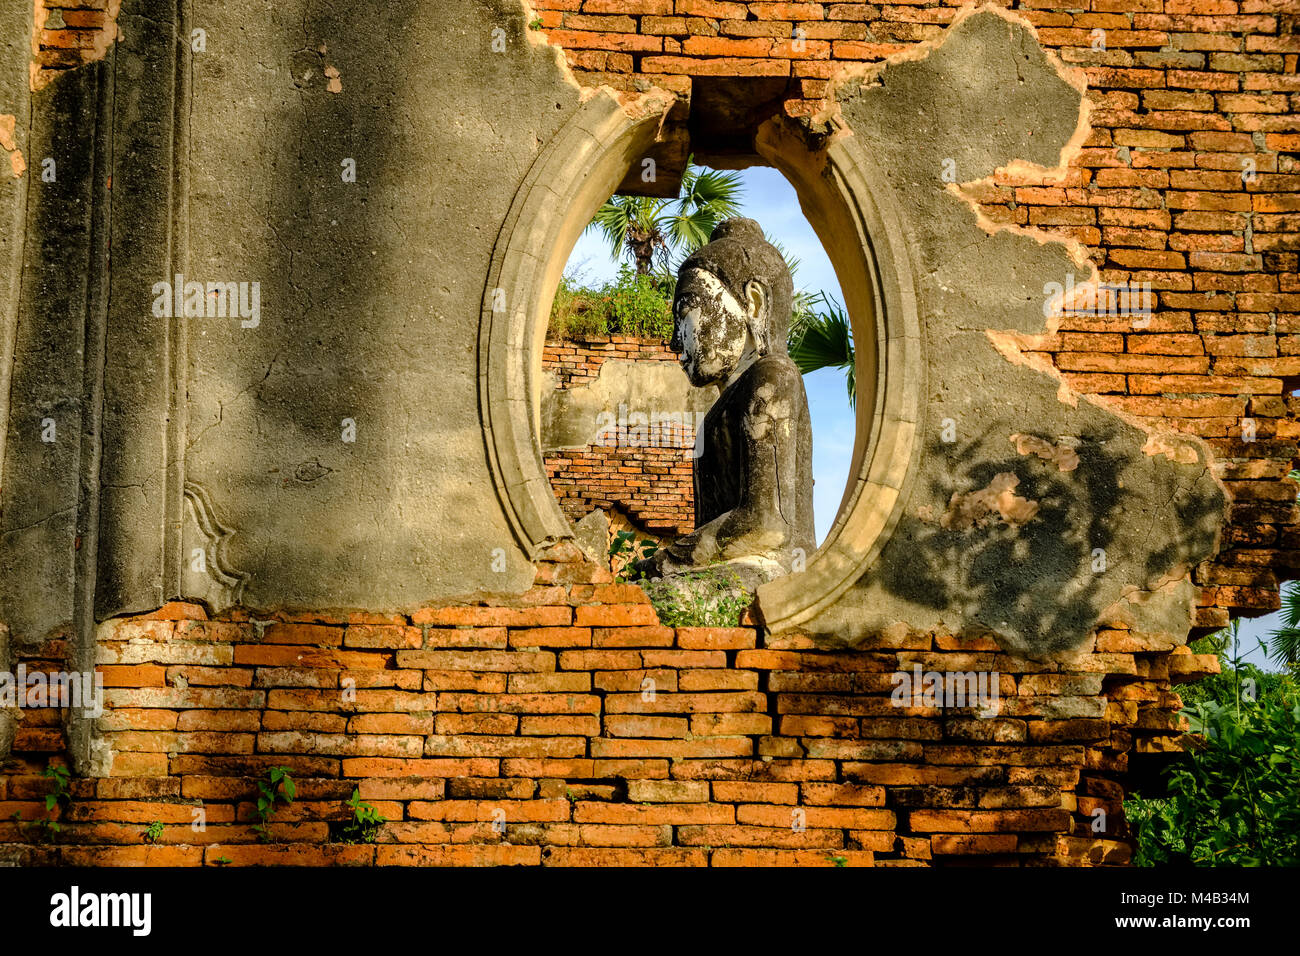 Une statue de bouddha est assis dans le bâtiments en brique de la Pagode Yadana Hsemee dans complexe Inwa, ancienne capitale de la Birmanie, vu à travers une fenêtre dans une brique Banque D'Images